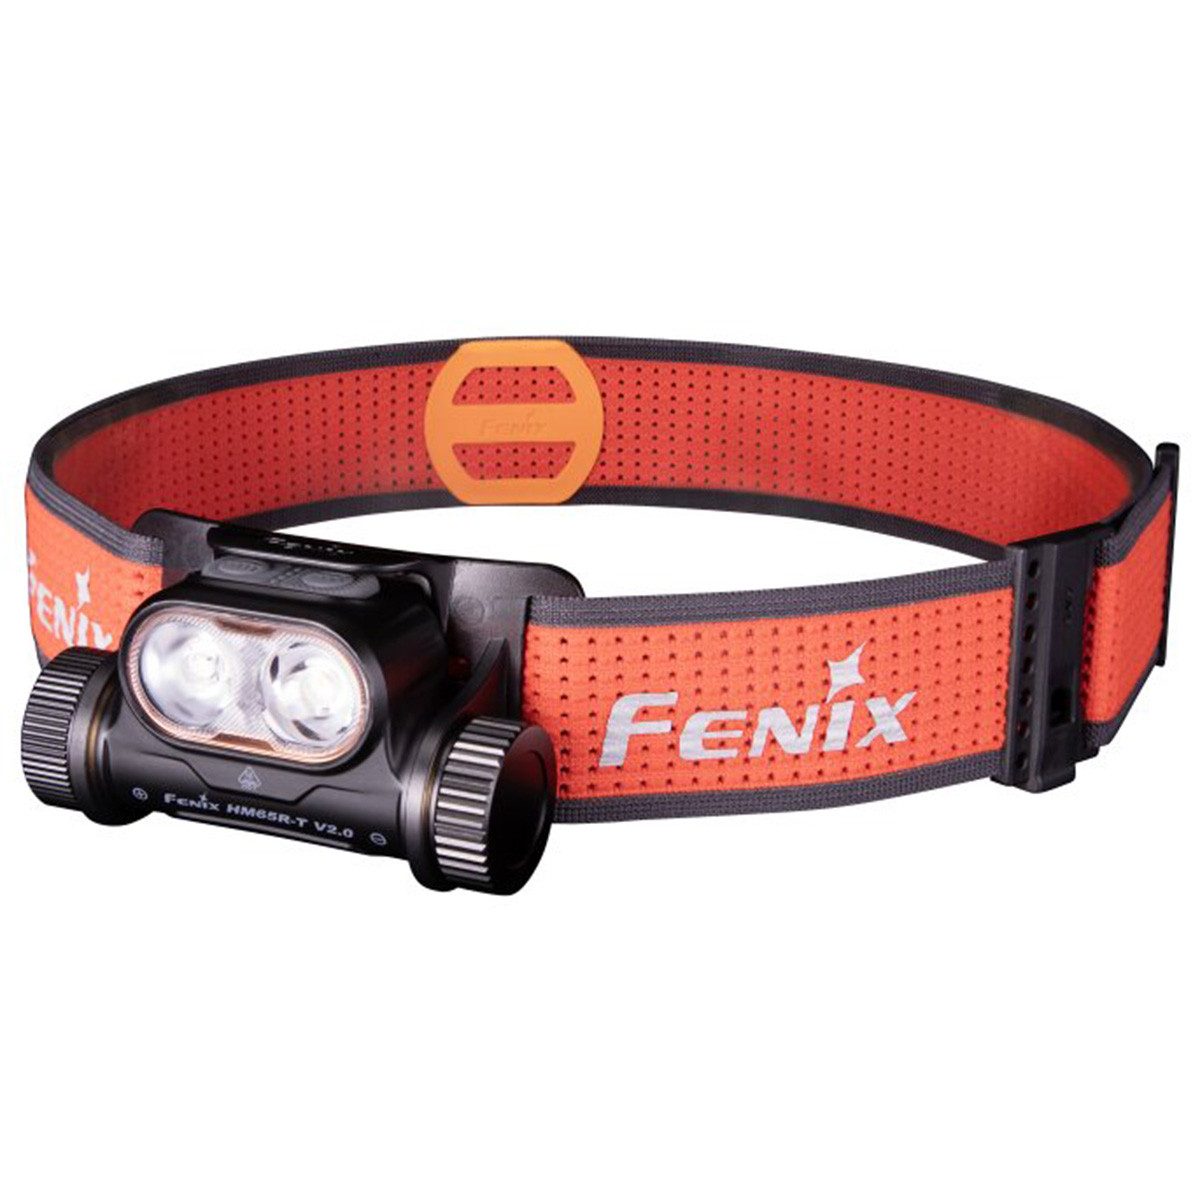 Fenix LED Stirnlampe HM65R-T V2.0 1600 Lumen - LED Stirnlampe Schwarz